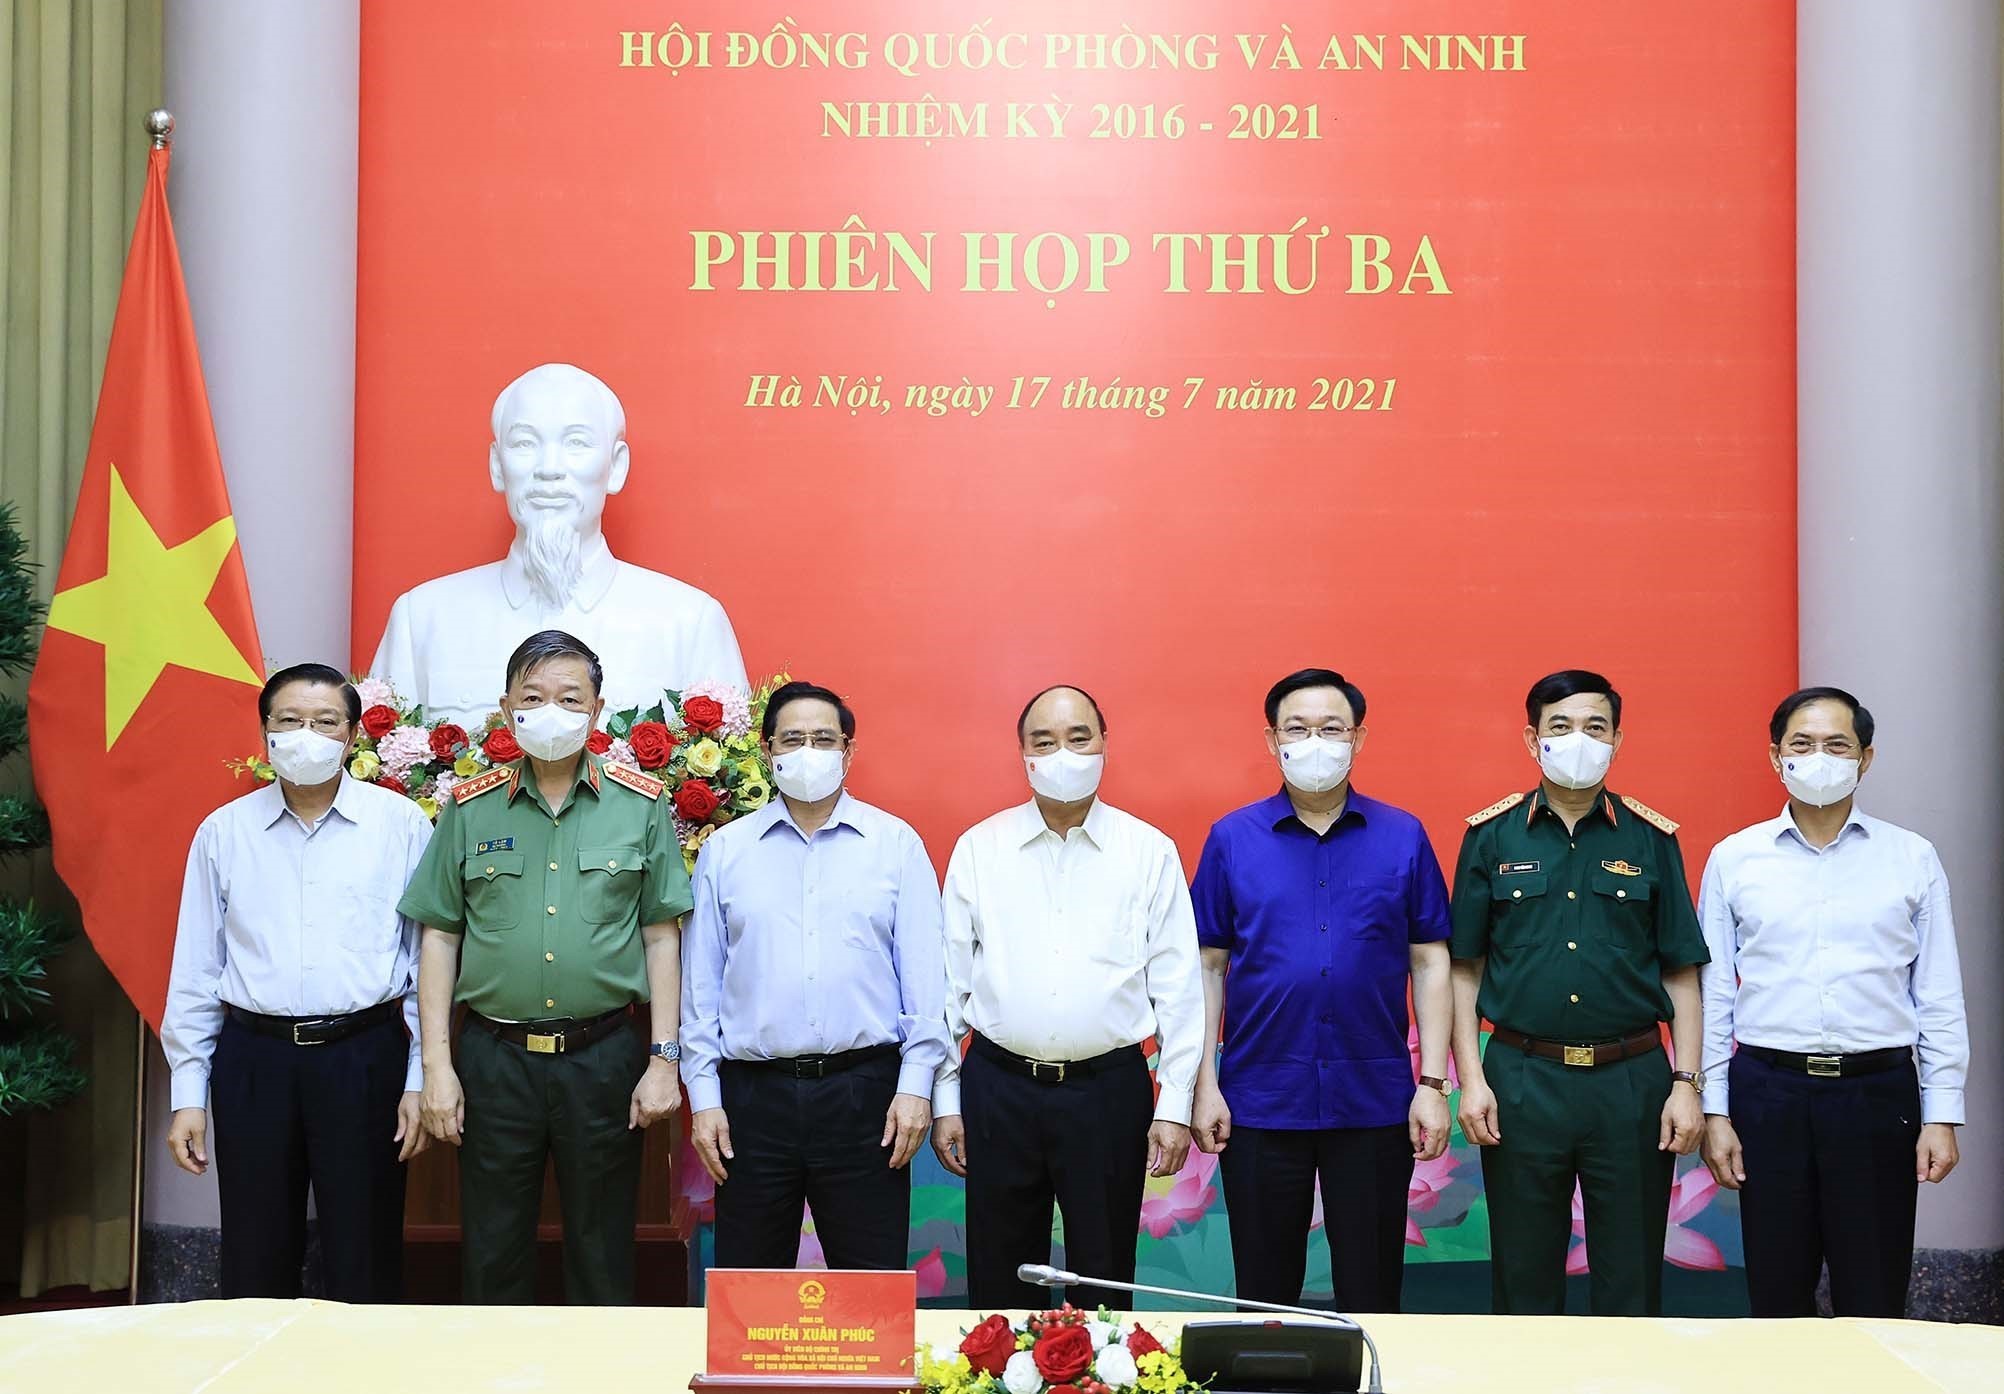 Đồng chí Nguyễn Xuân Phúc, Ủy viên Bộ Chính trị, Chủ tịch nước, Chủ tịch Hội đồng Quốc phòng và An ninh cùng các đại biểu tham dự Phiên họp